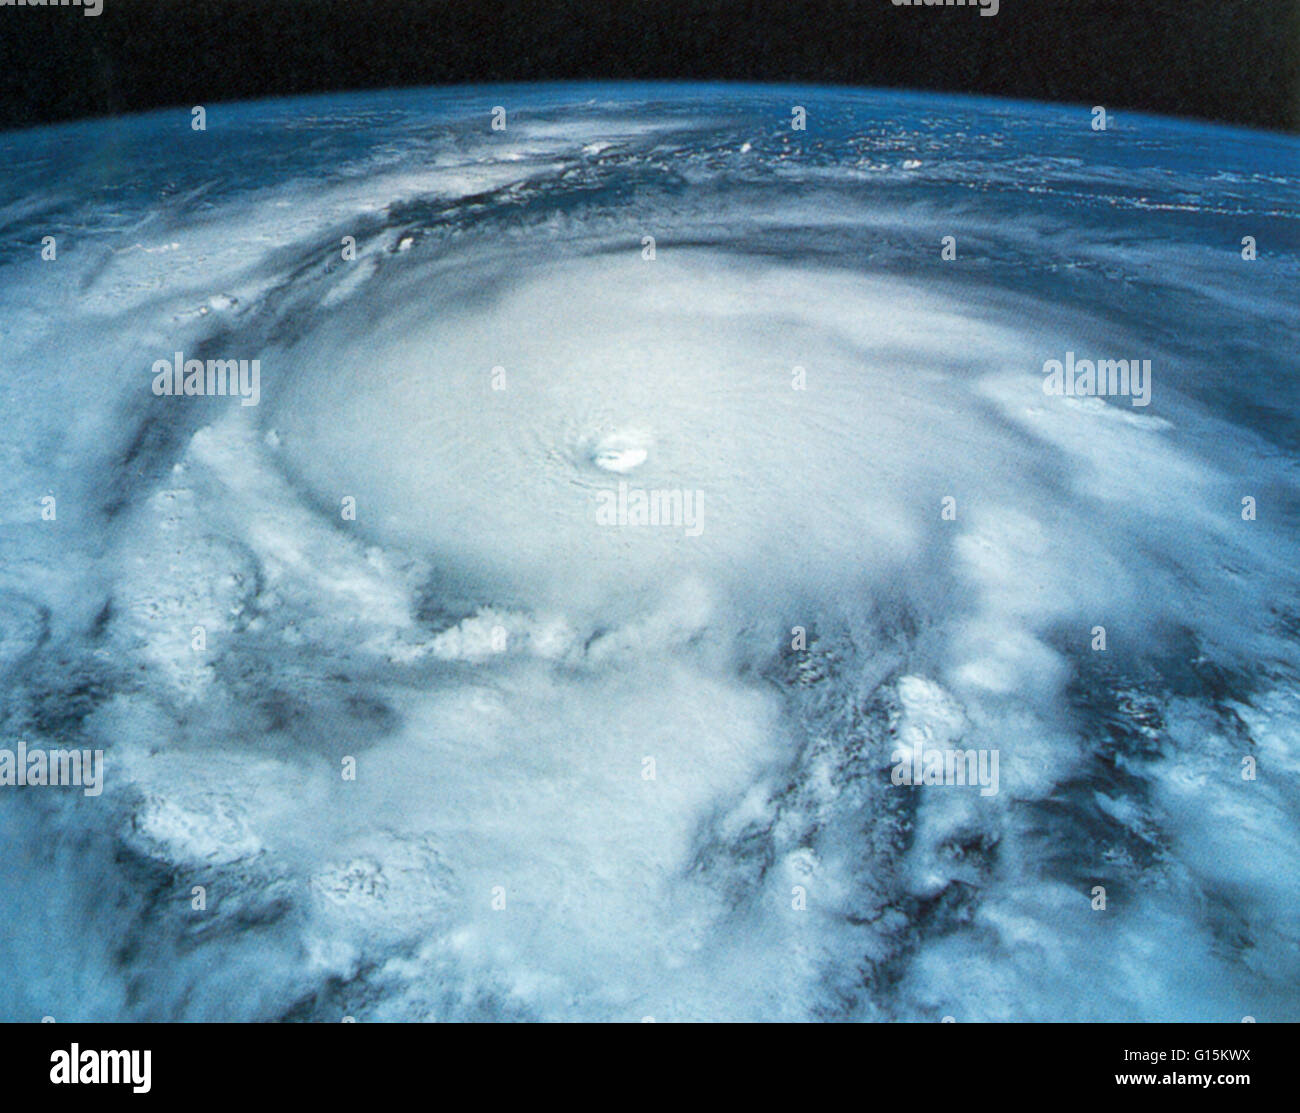 Hurrikan Emilia (19. Juli 1994) über dem östlichen Pazifik, wie aus dem Weltraum gesehen. Gewaltige Stürme wie diese wurden ein gemeinsames Merkmal der Jurazeit. Stockfoto